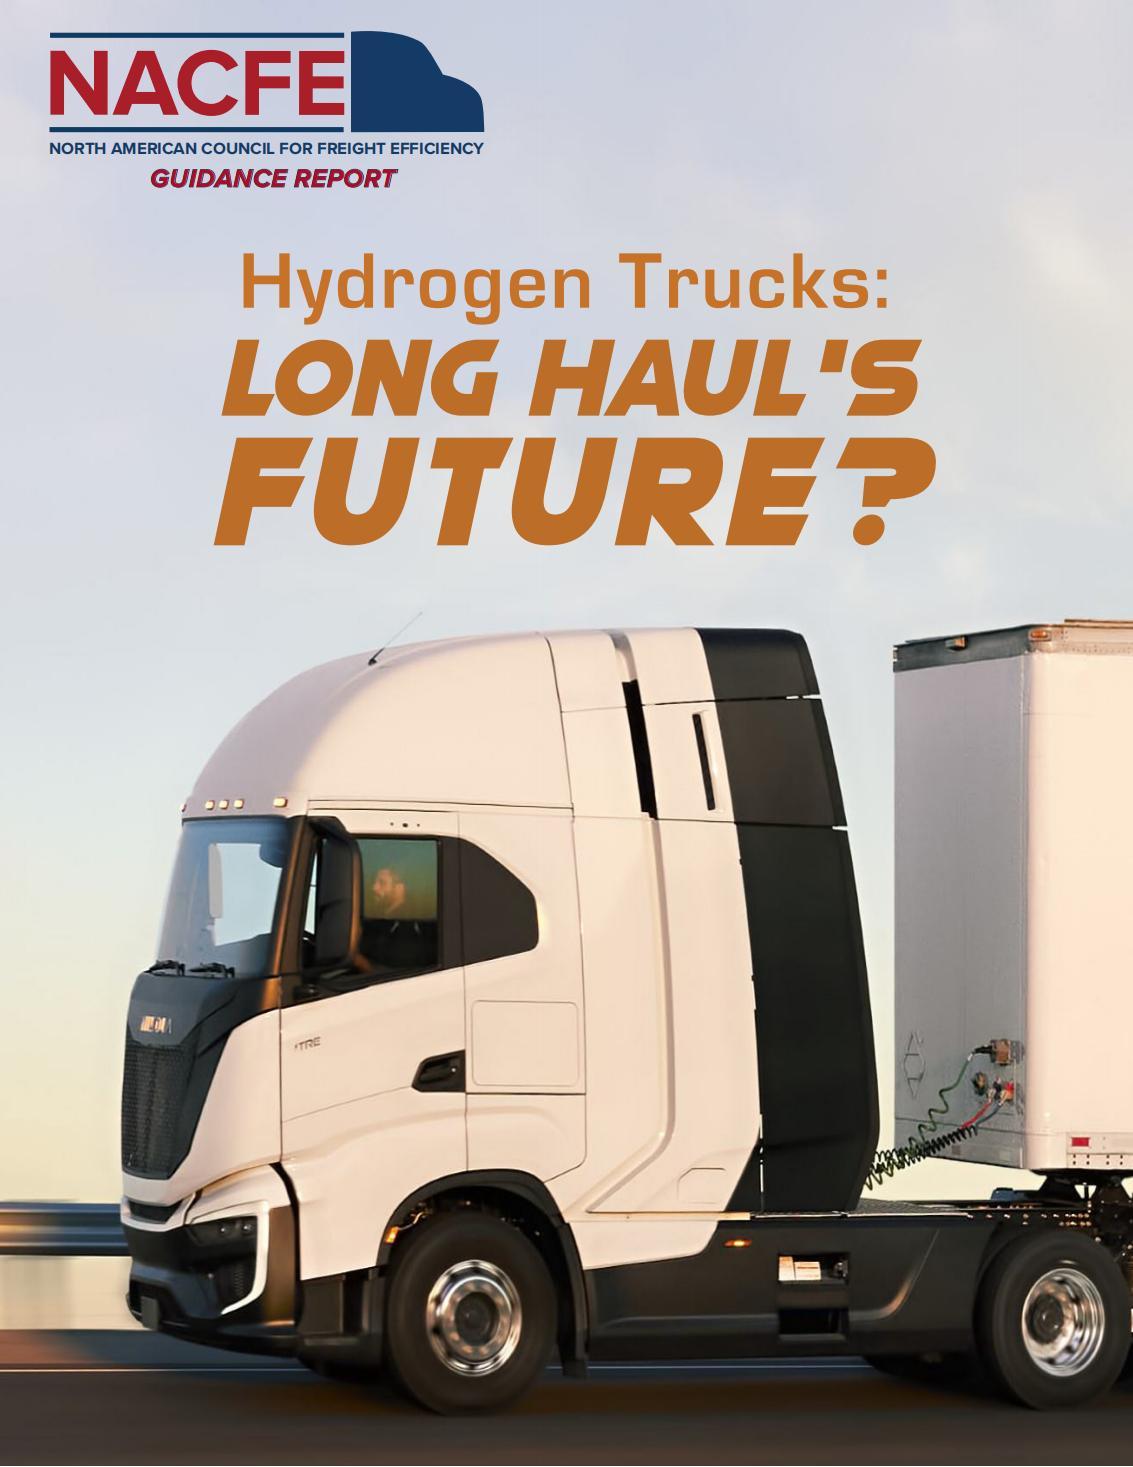 Hydrogen Trucks: LONG HAUL'SFUTURE?